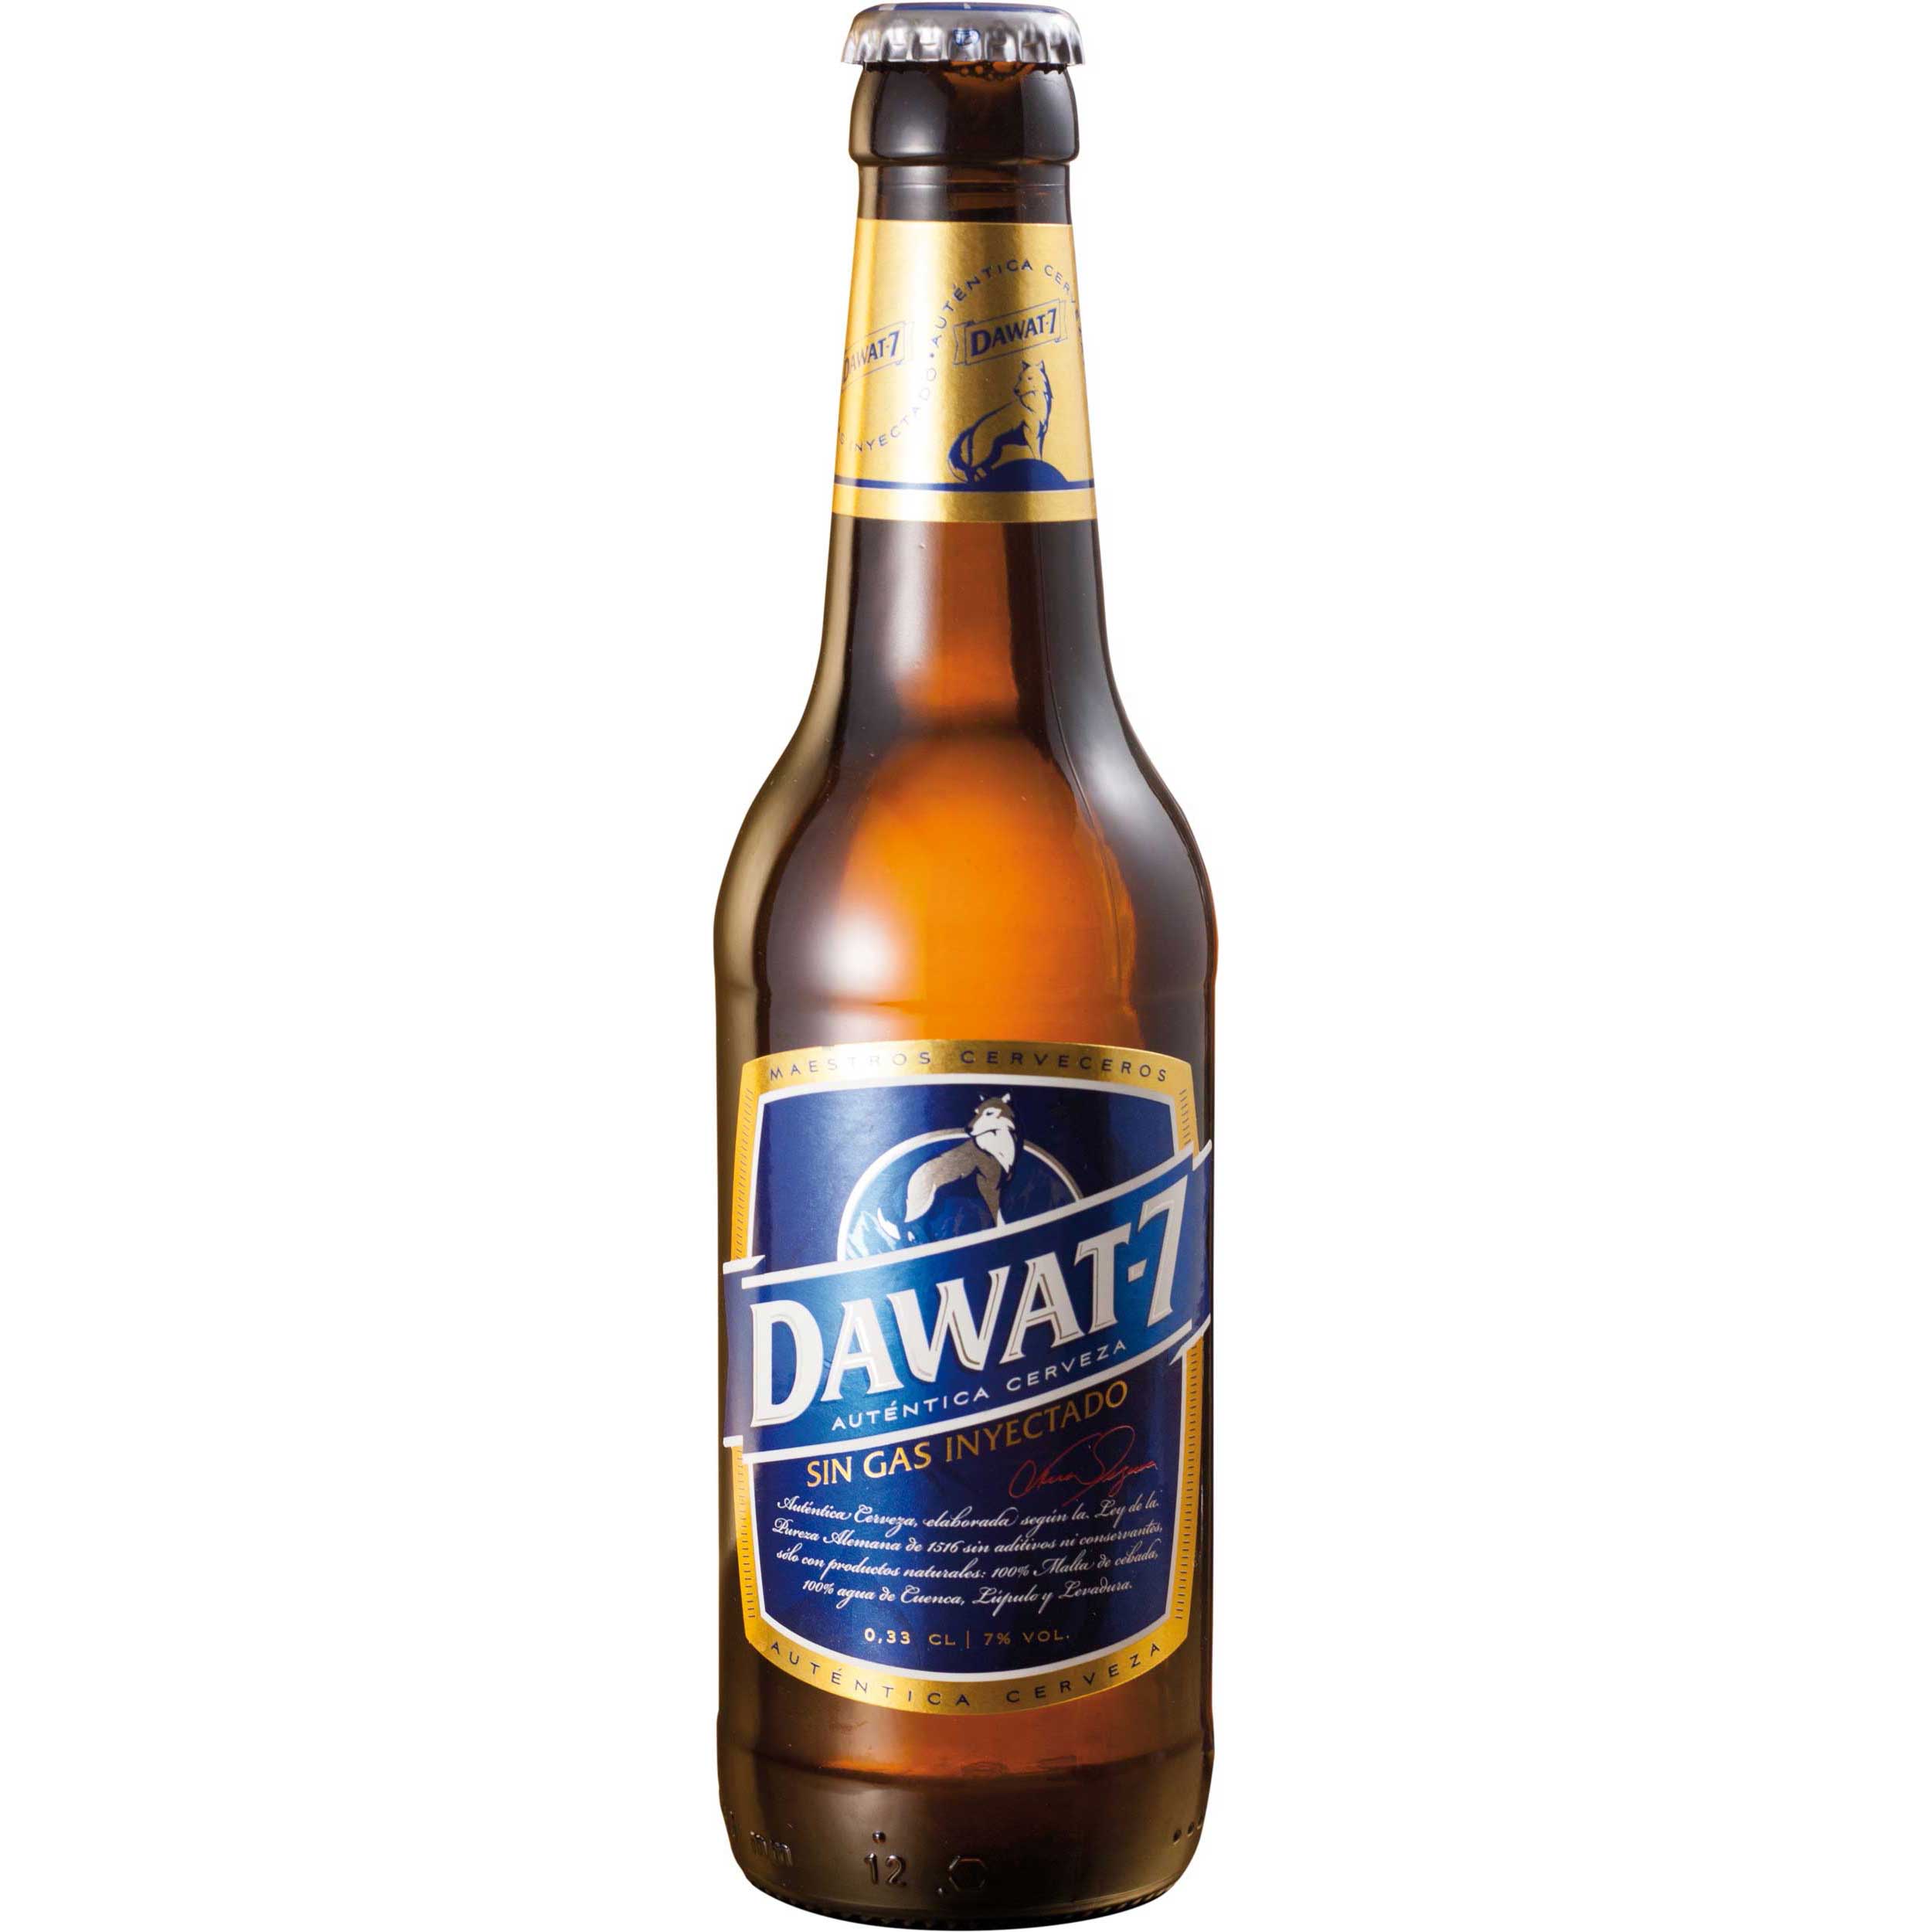 Comprar Cerveza Artesanal Dawat-7. Tipo Maibock, cerveza rubia, muy equilibrada, alta graduación. Producto gourmet de Cuenca. Delicatessen Castilla-La Mancha.